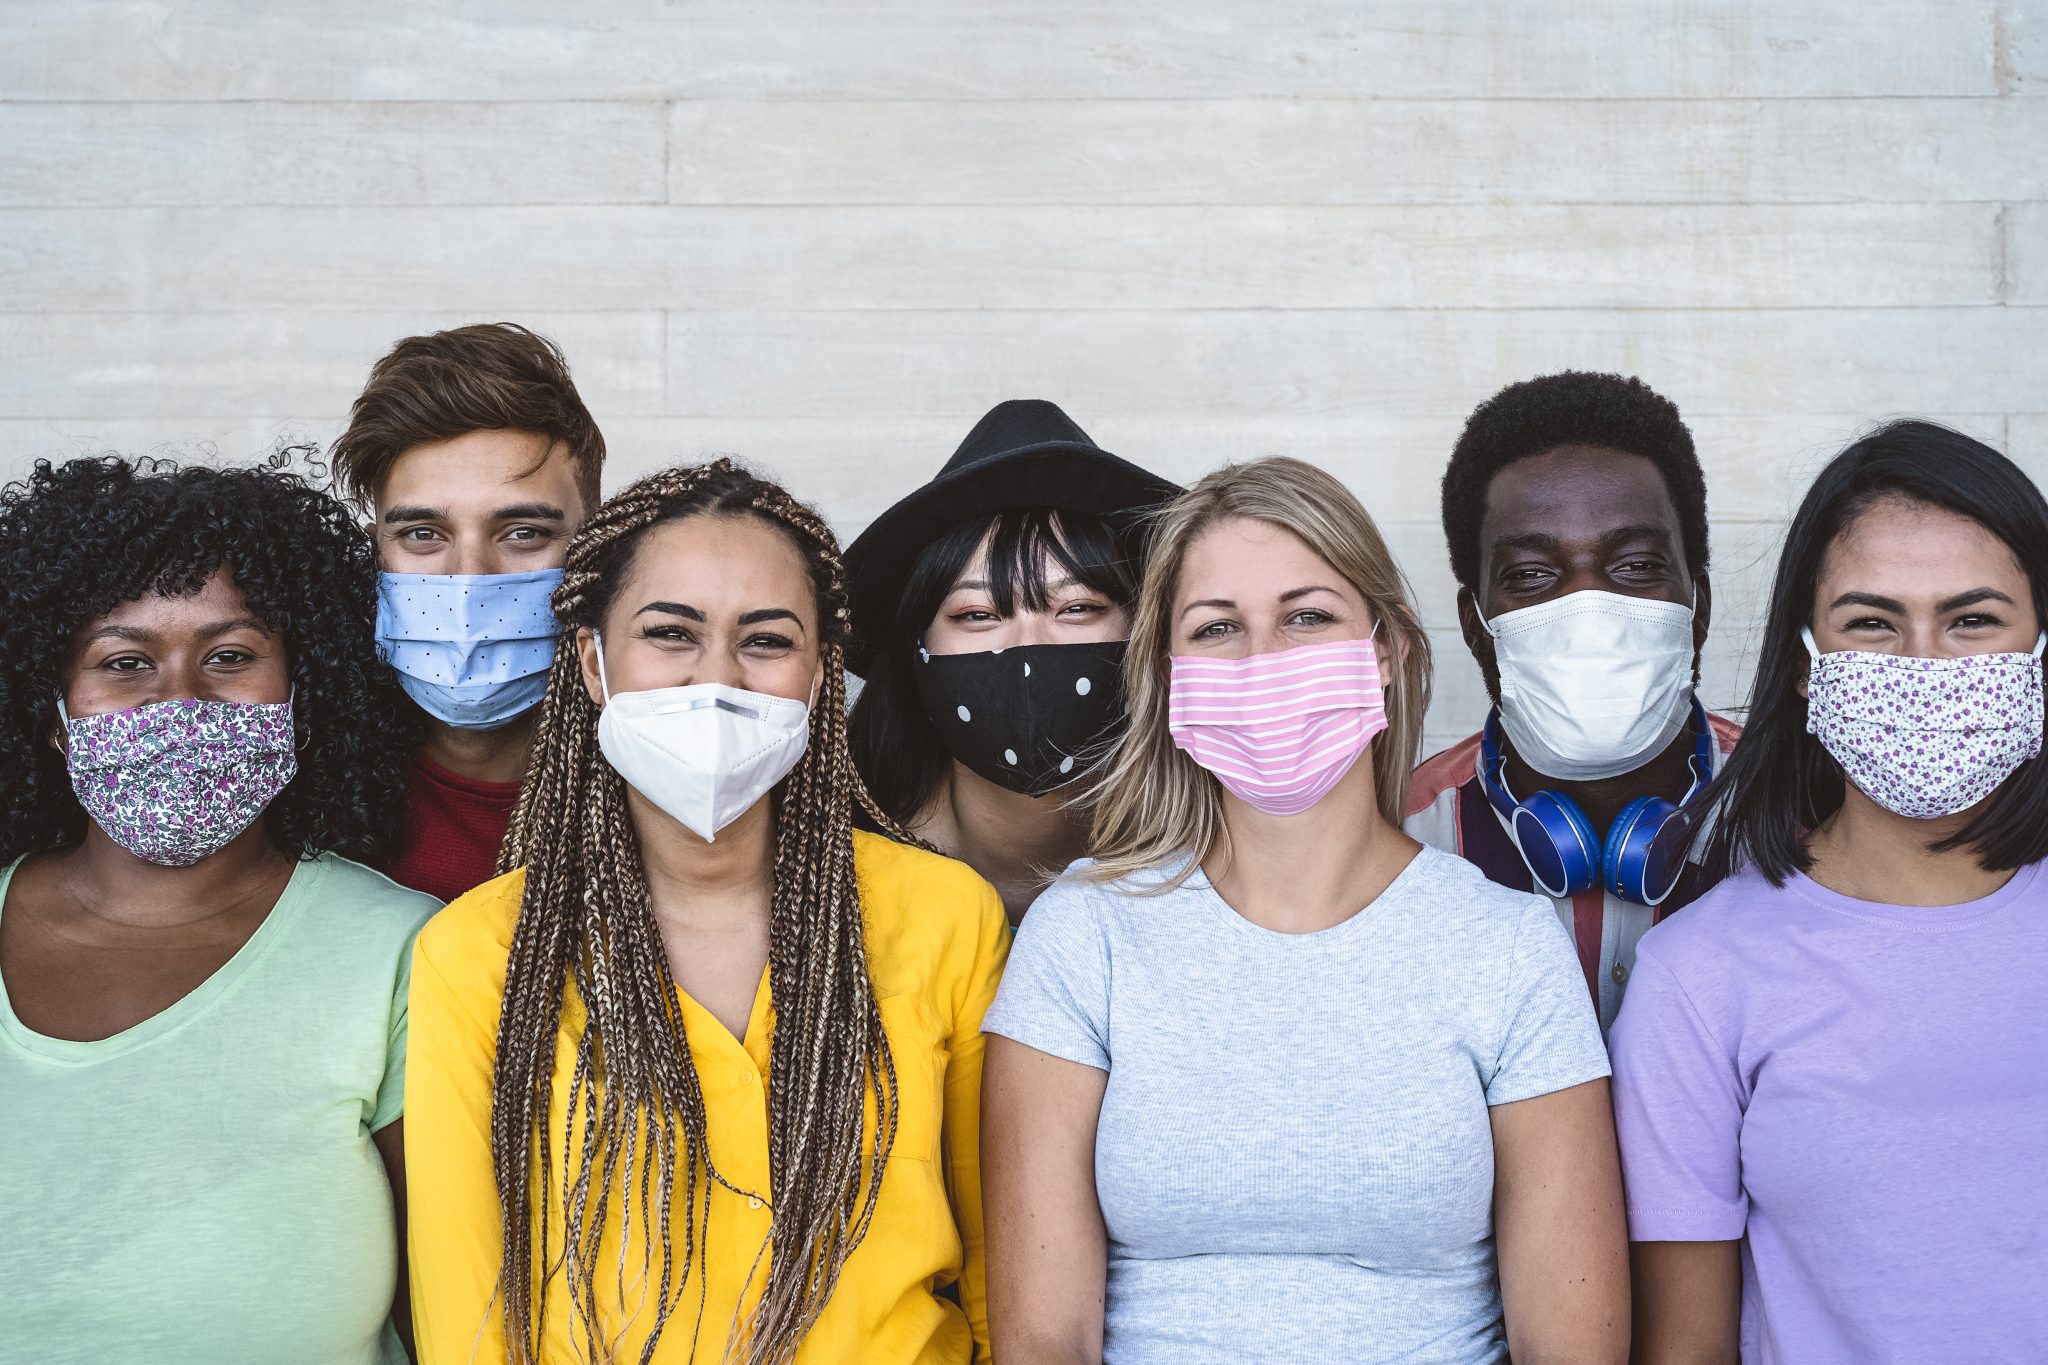 A diverse group of millennials wearing face masks